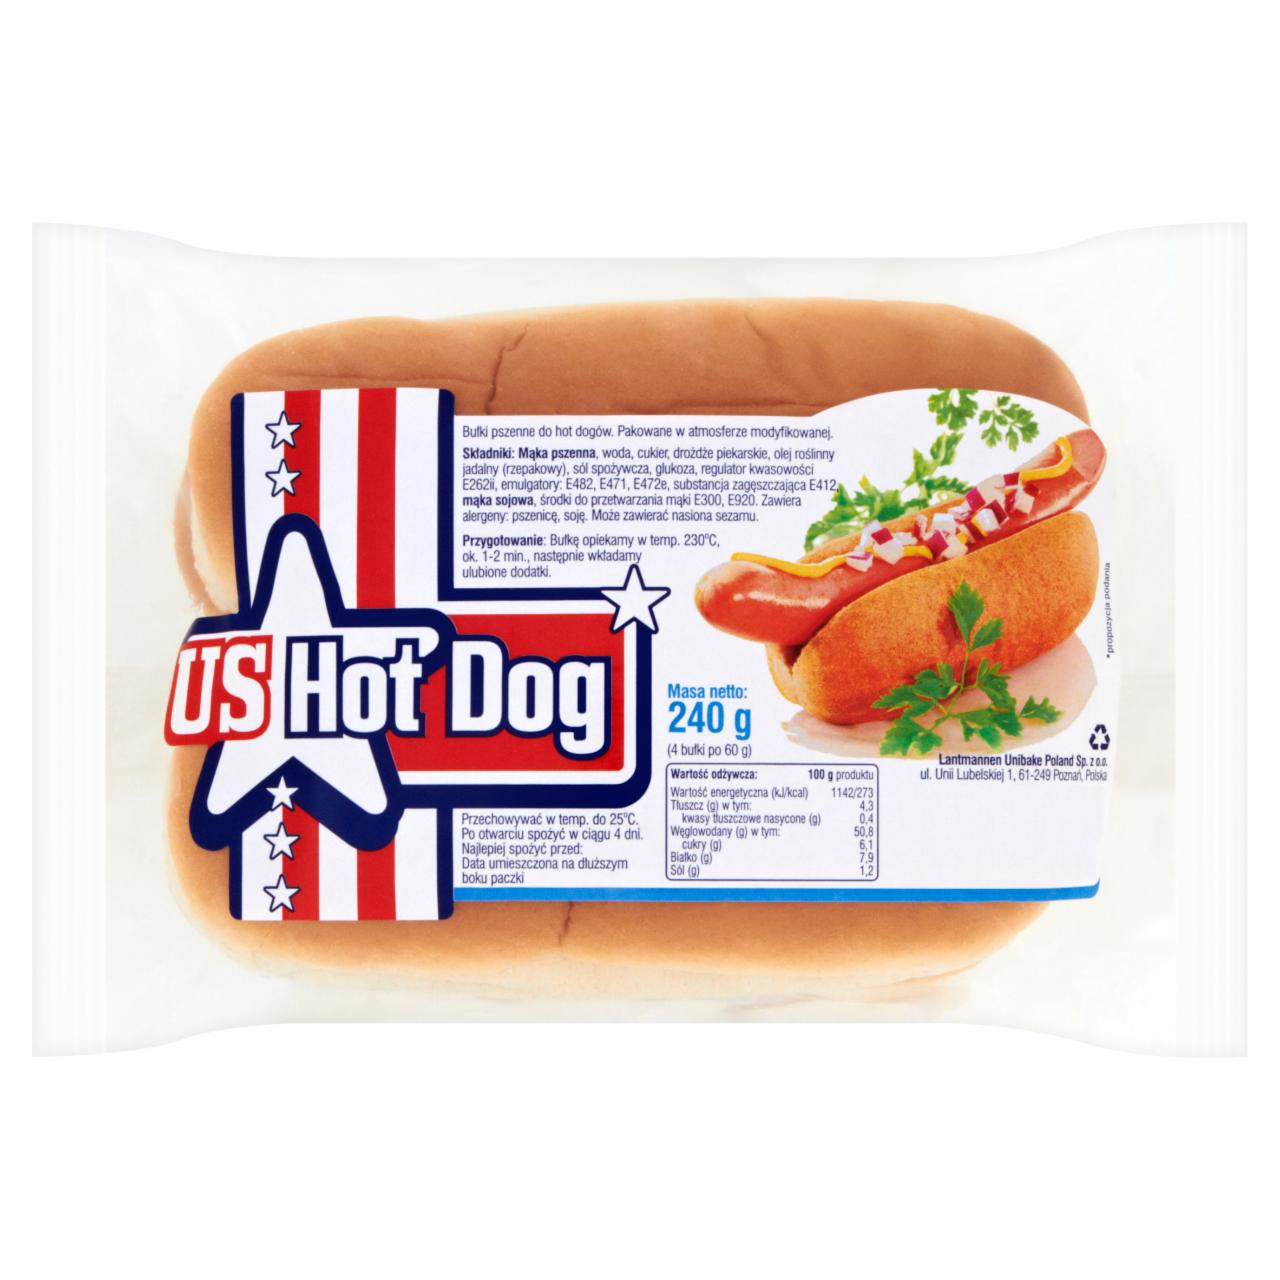 Zdjęcia - US Hot Dog Bułki do hot dogów 240 g (4 sztuk)